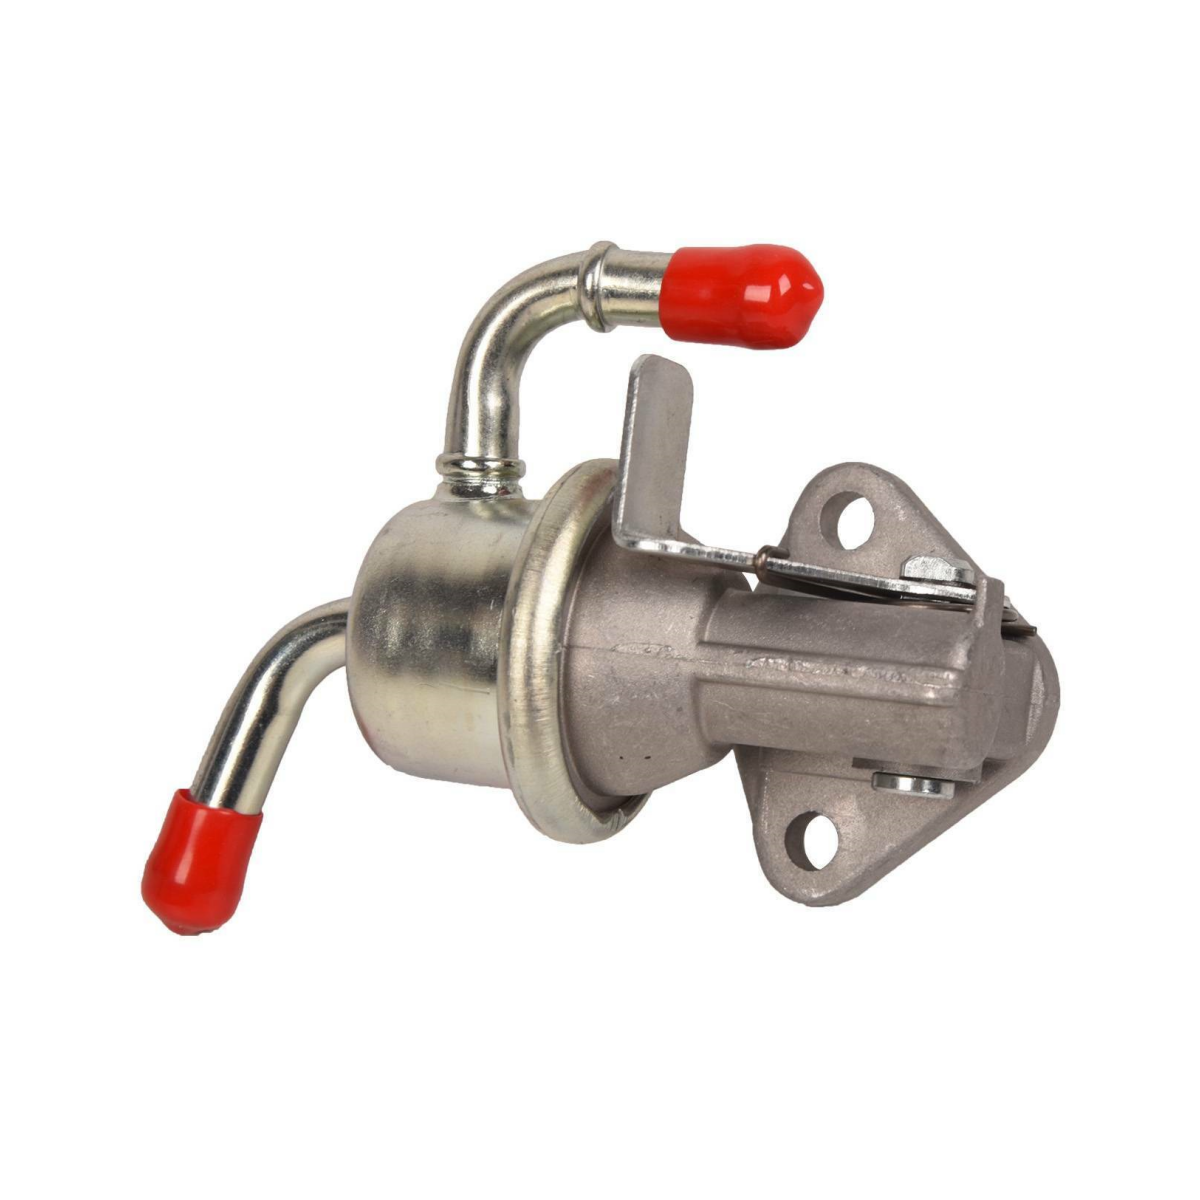 16285-52032 Fuel Lift Pump for Kubota Engine D905 D1005 D1105 D1305 - Sinocmp